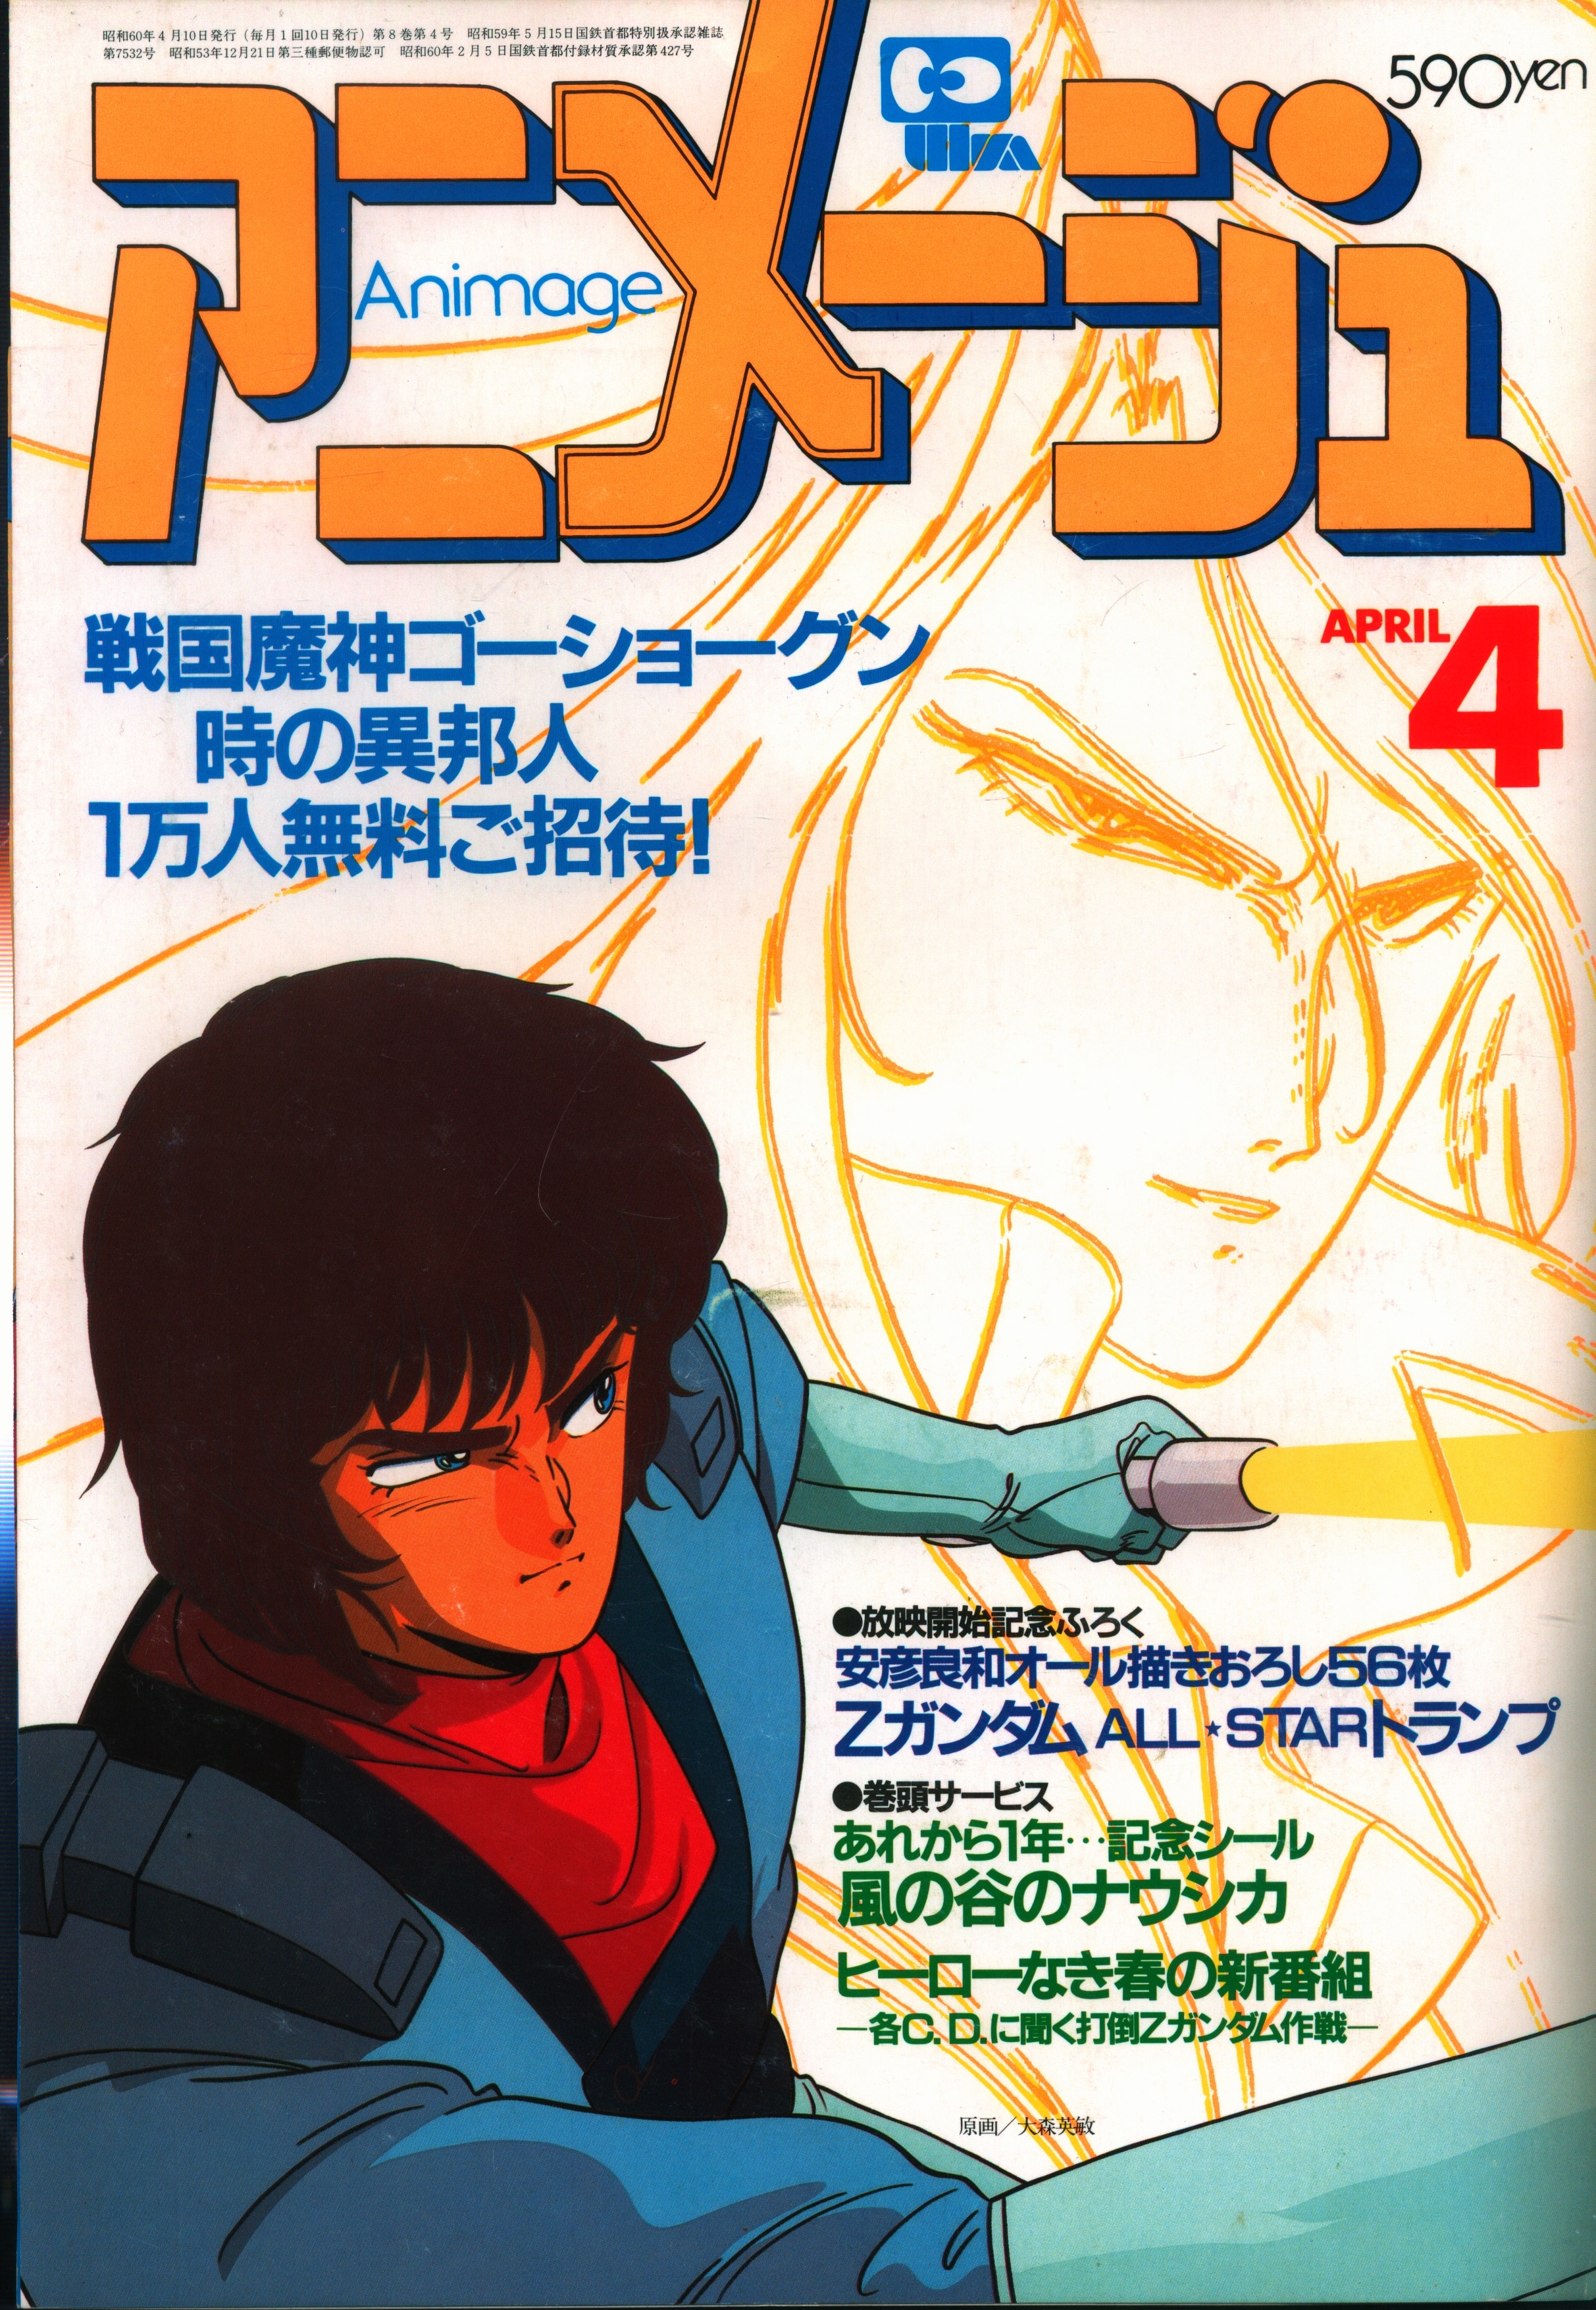 徳間書店 1985年(昭和60年)のアニメ雑誌 付録つき アニメージュ1985年